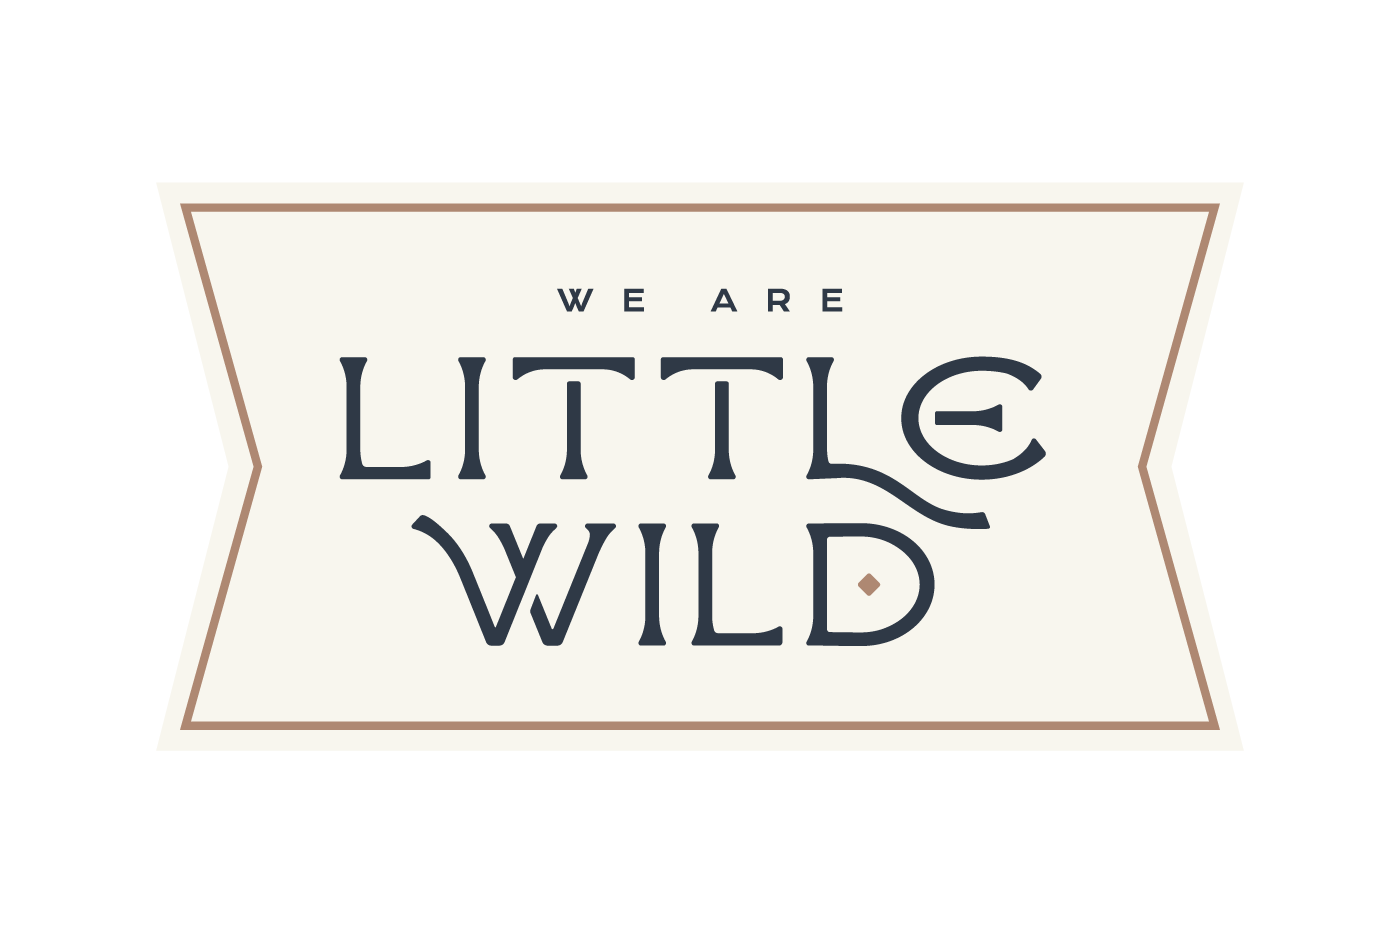 Little Wild